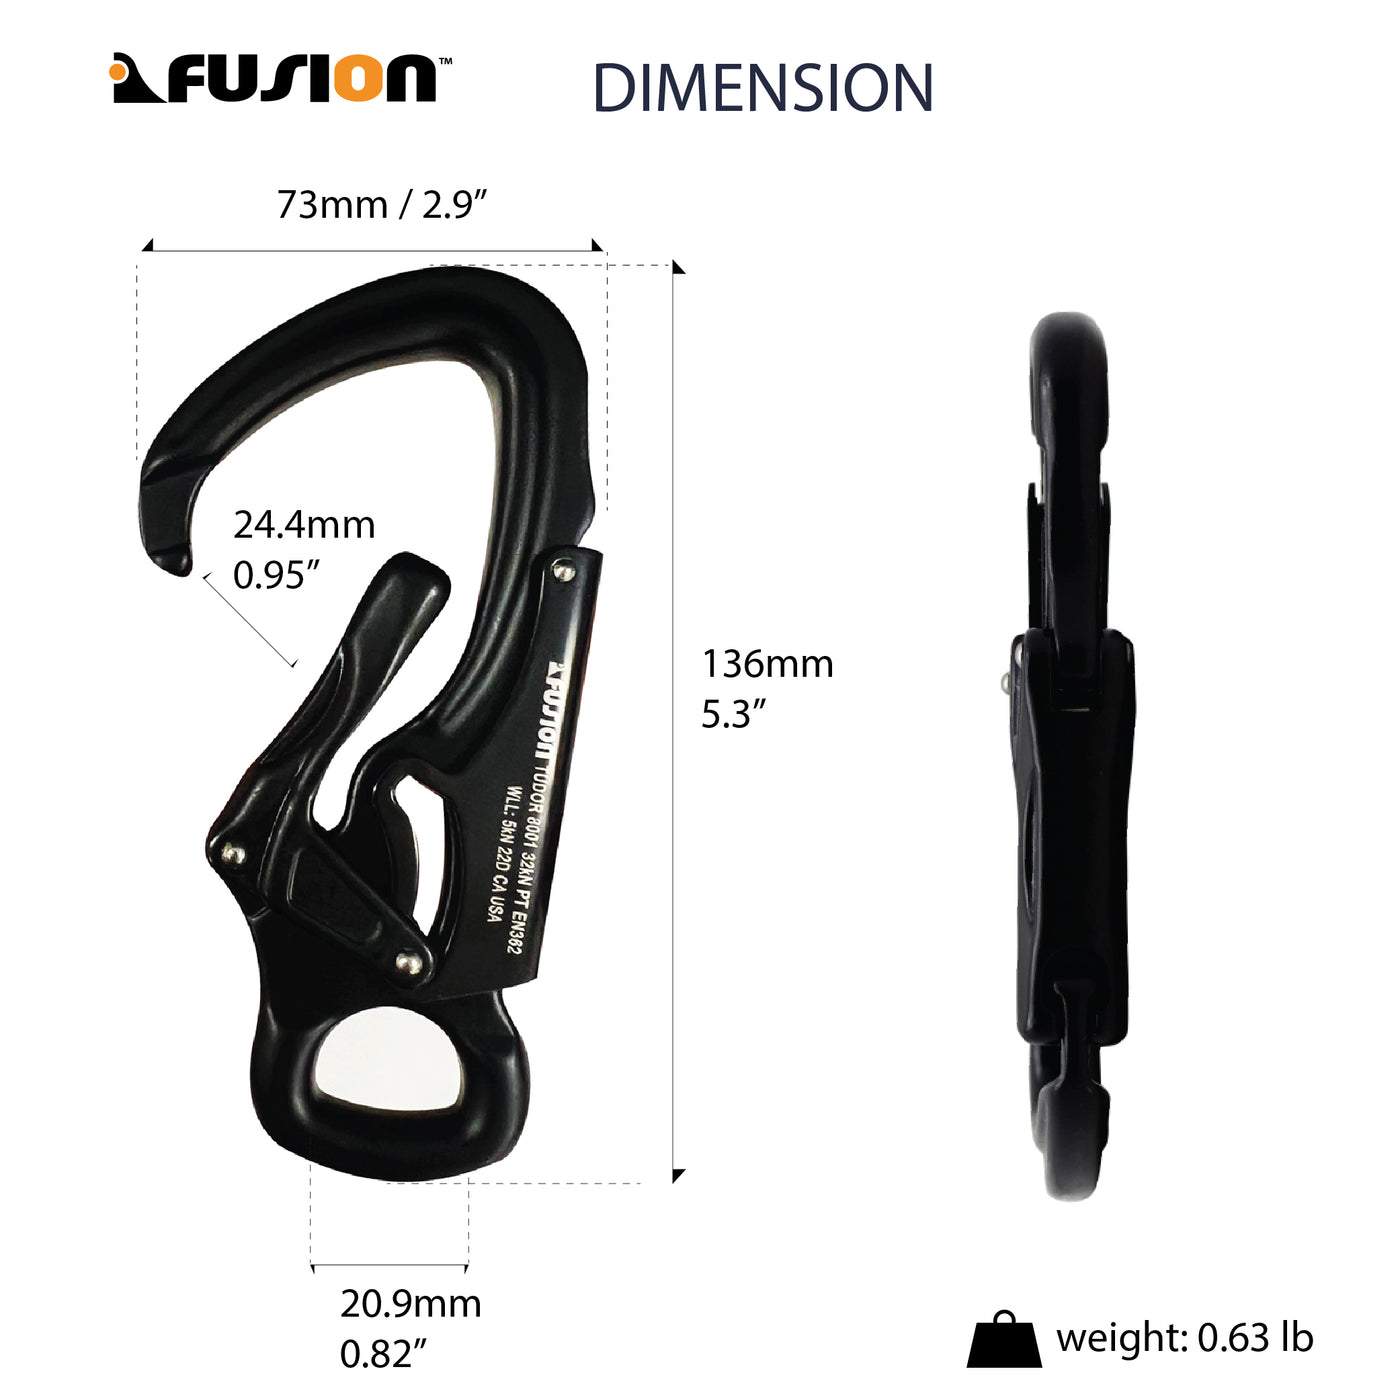 Tudor Flat Loop Aluminum Snap Hook Carabiner - Black